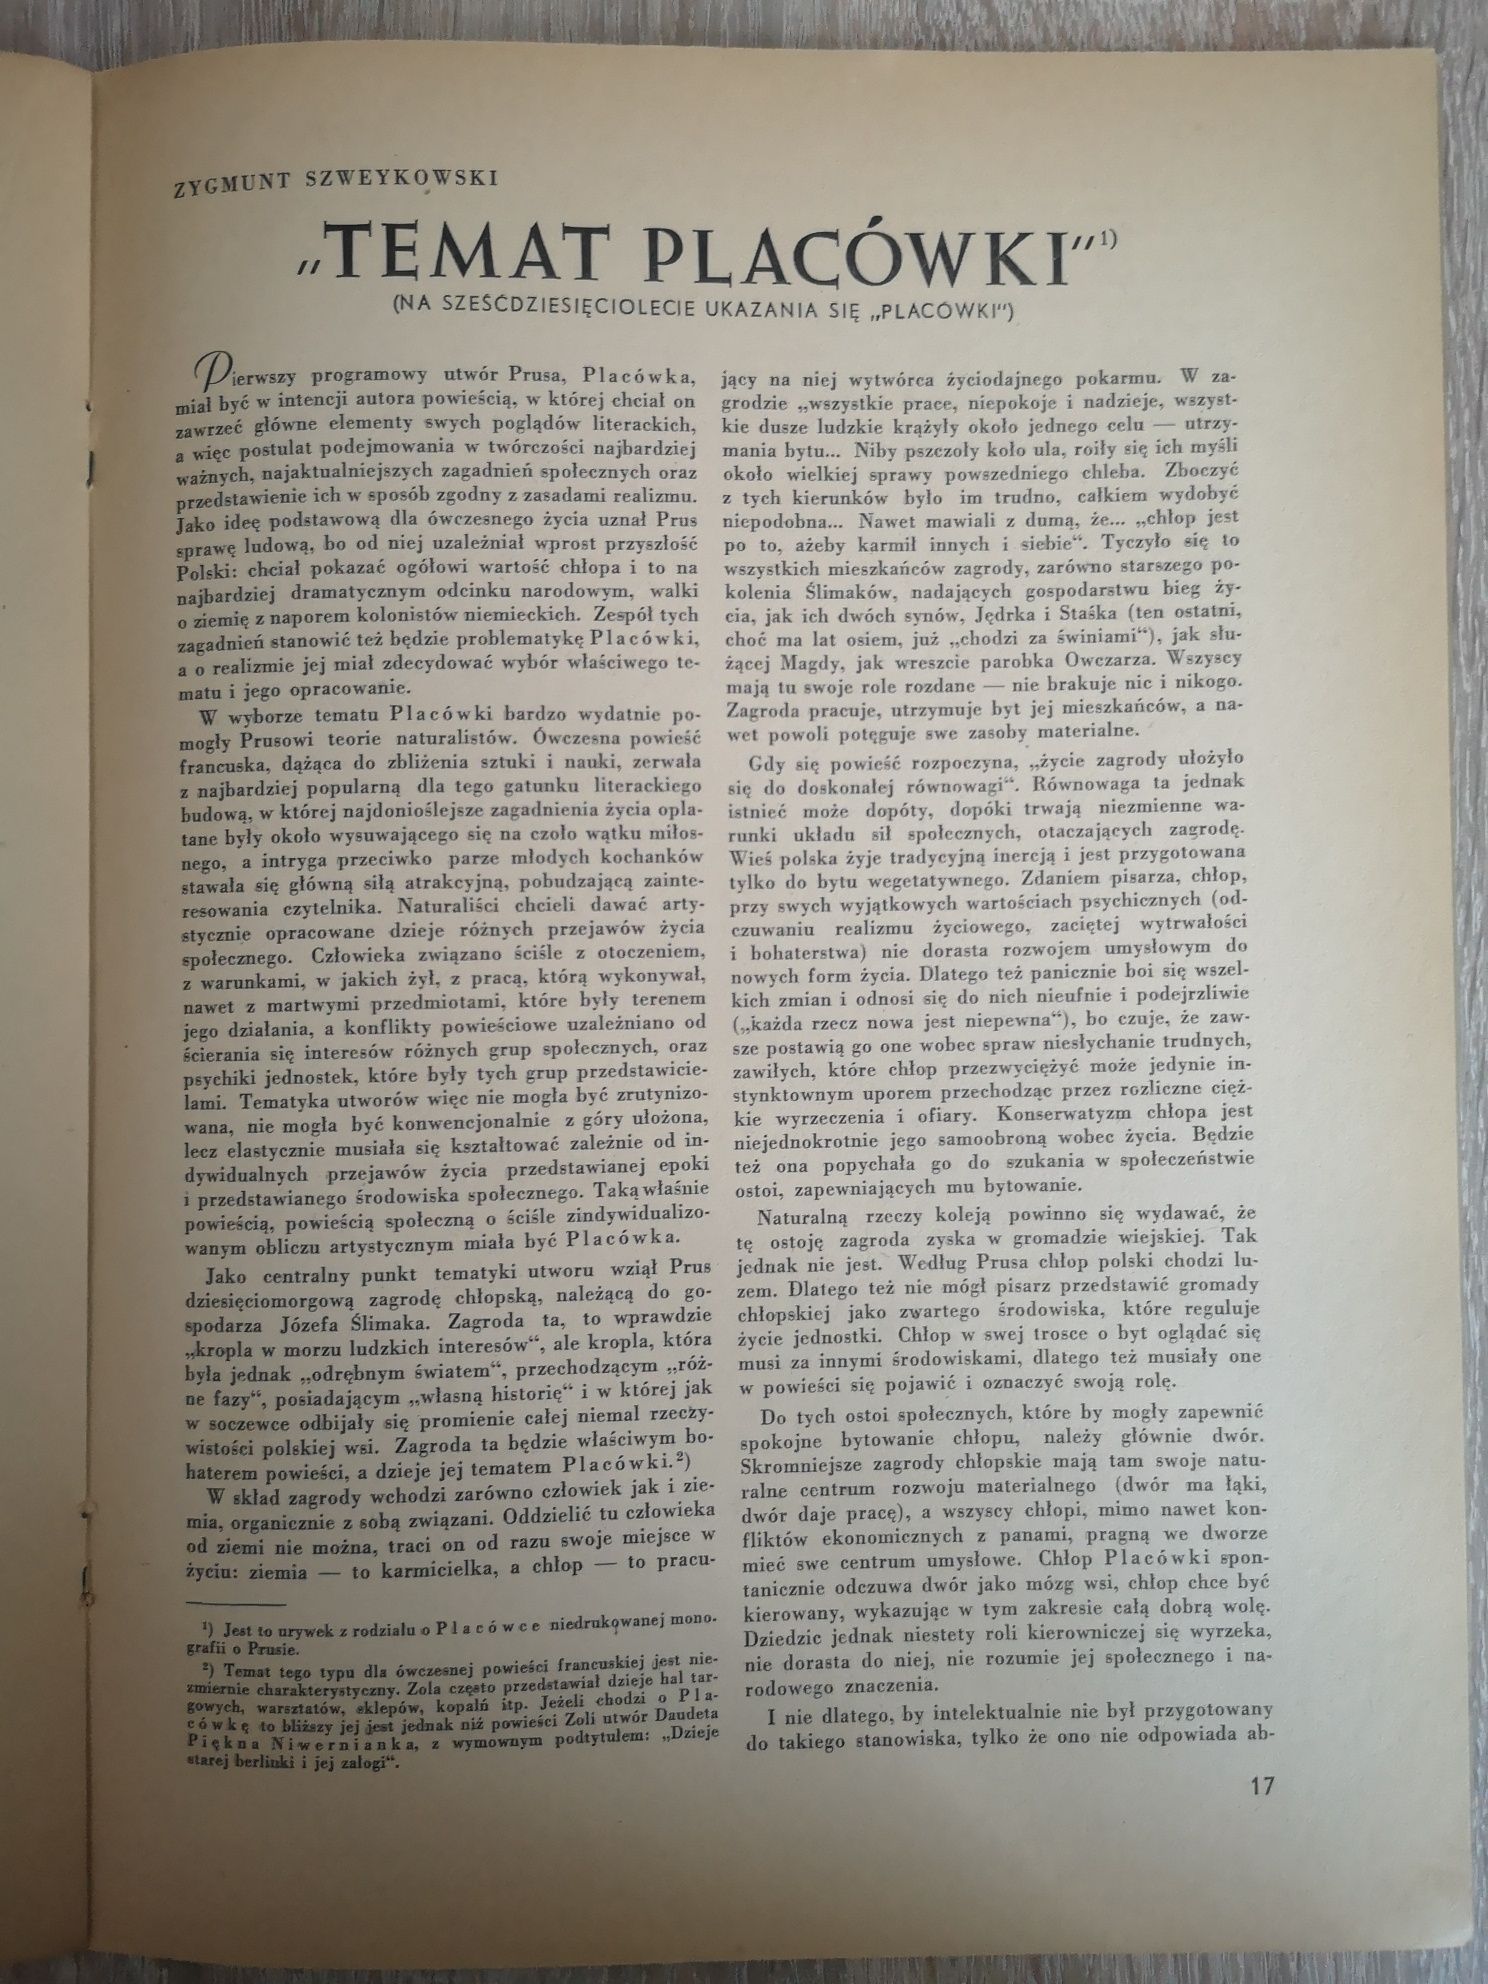 Życie Literackie dwutygodnik 1945 Poznań